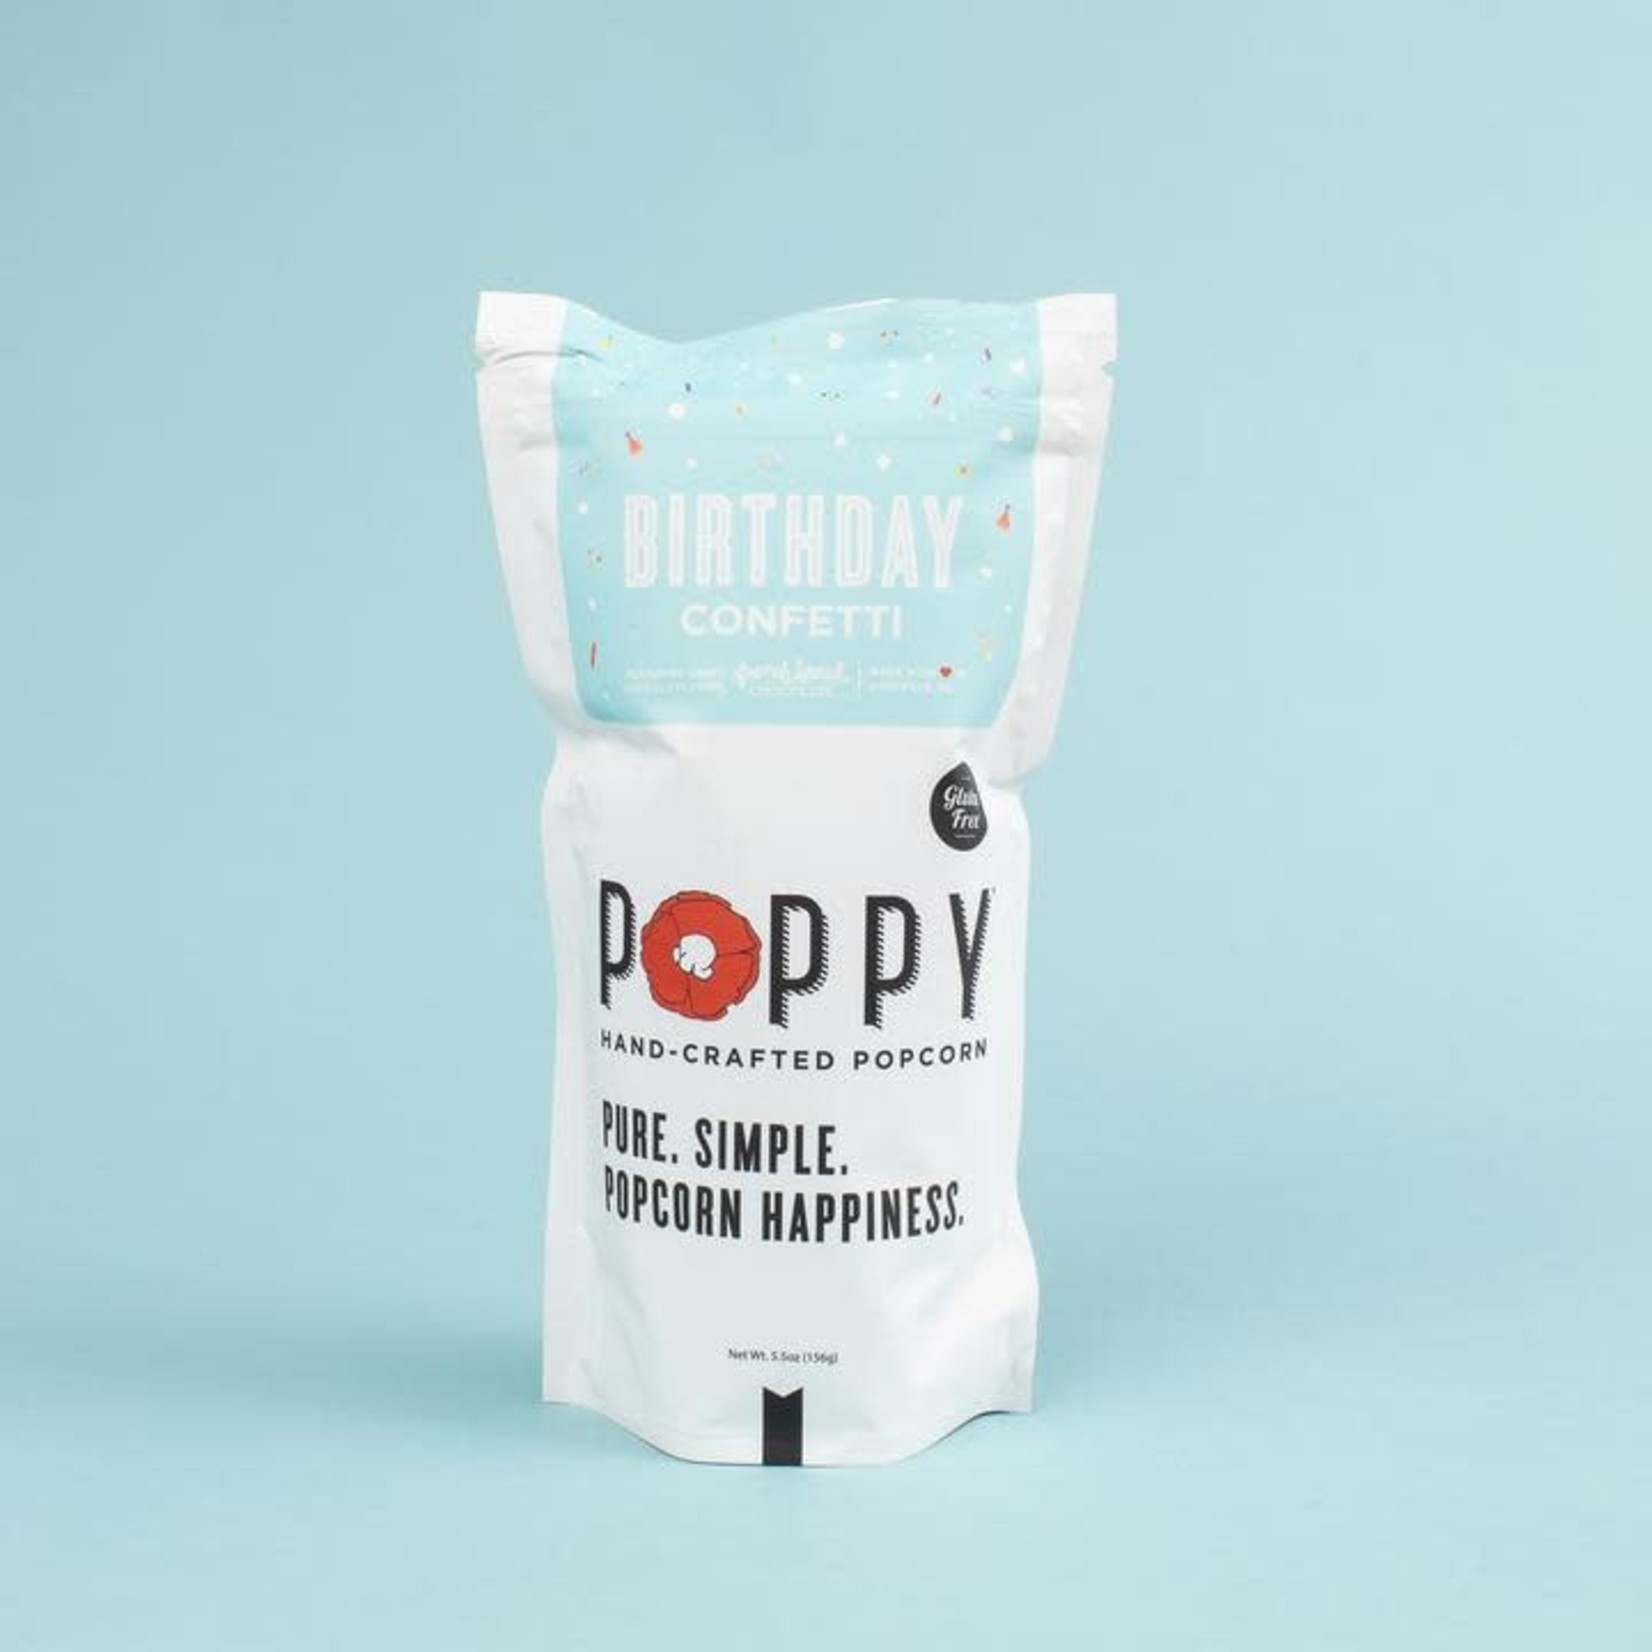 Poppy Handcrafted Popcorn Birthday Confetti Popcorn